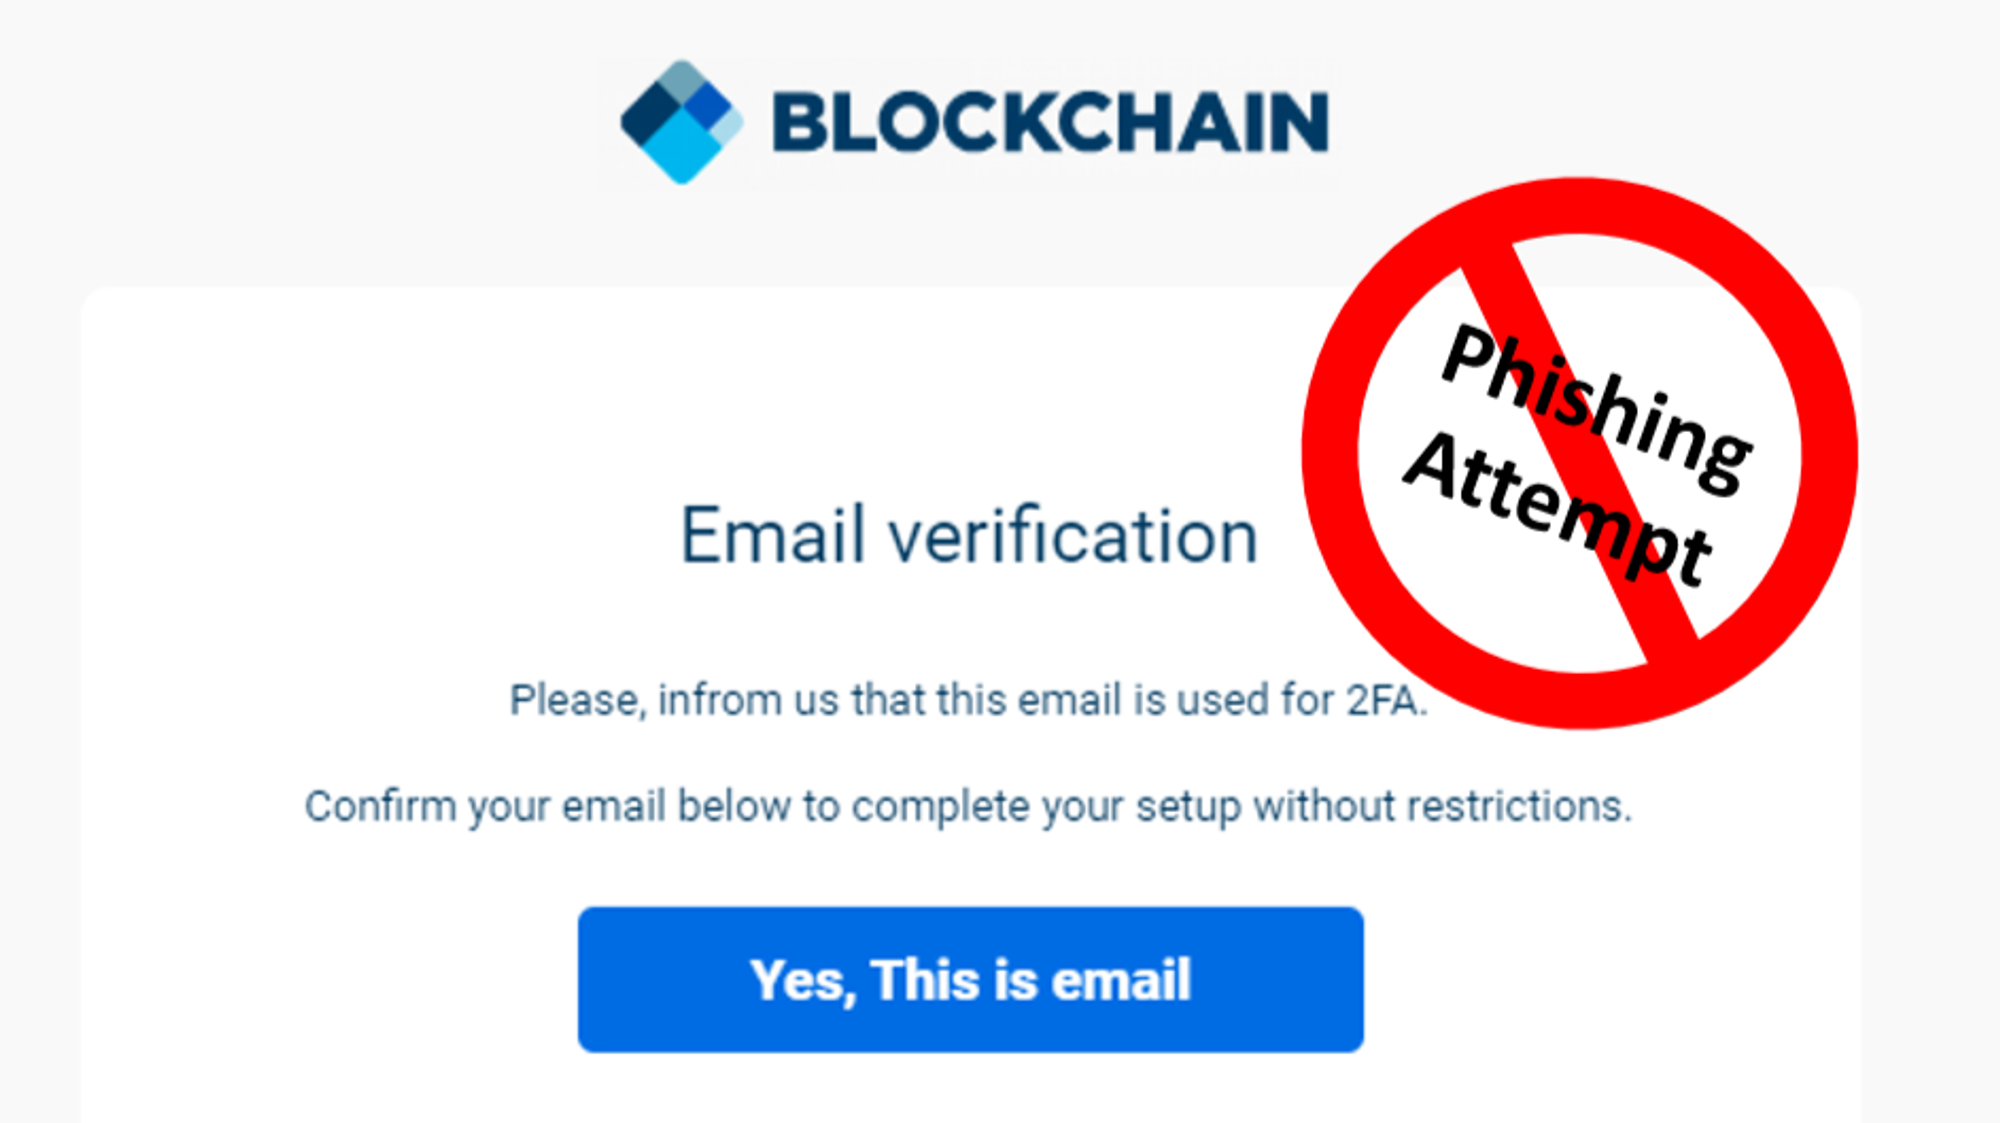 이메일로 가상자산 입금을 요구

출처: https://www.publish0x.com/ghumat-trading/phishing-email-scam-spotting-red-flags-xrqzdm